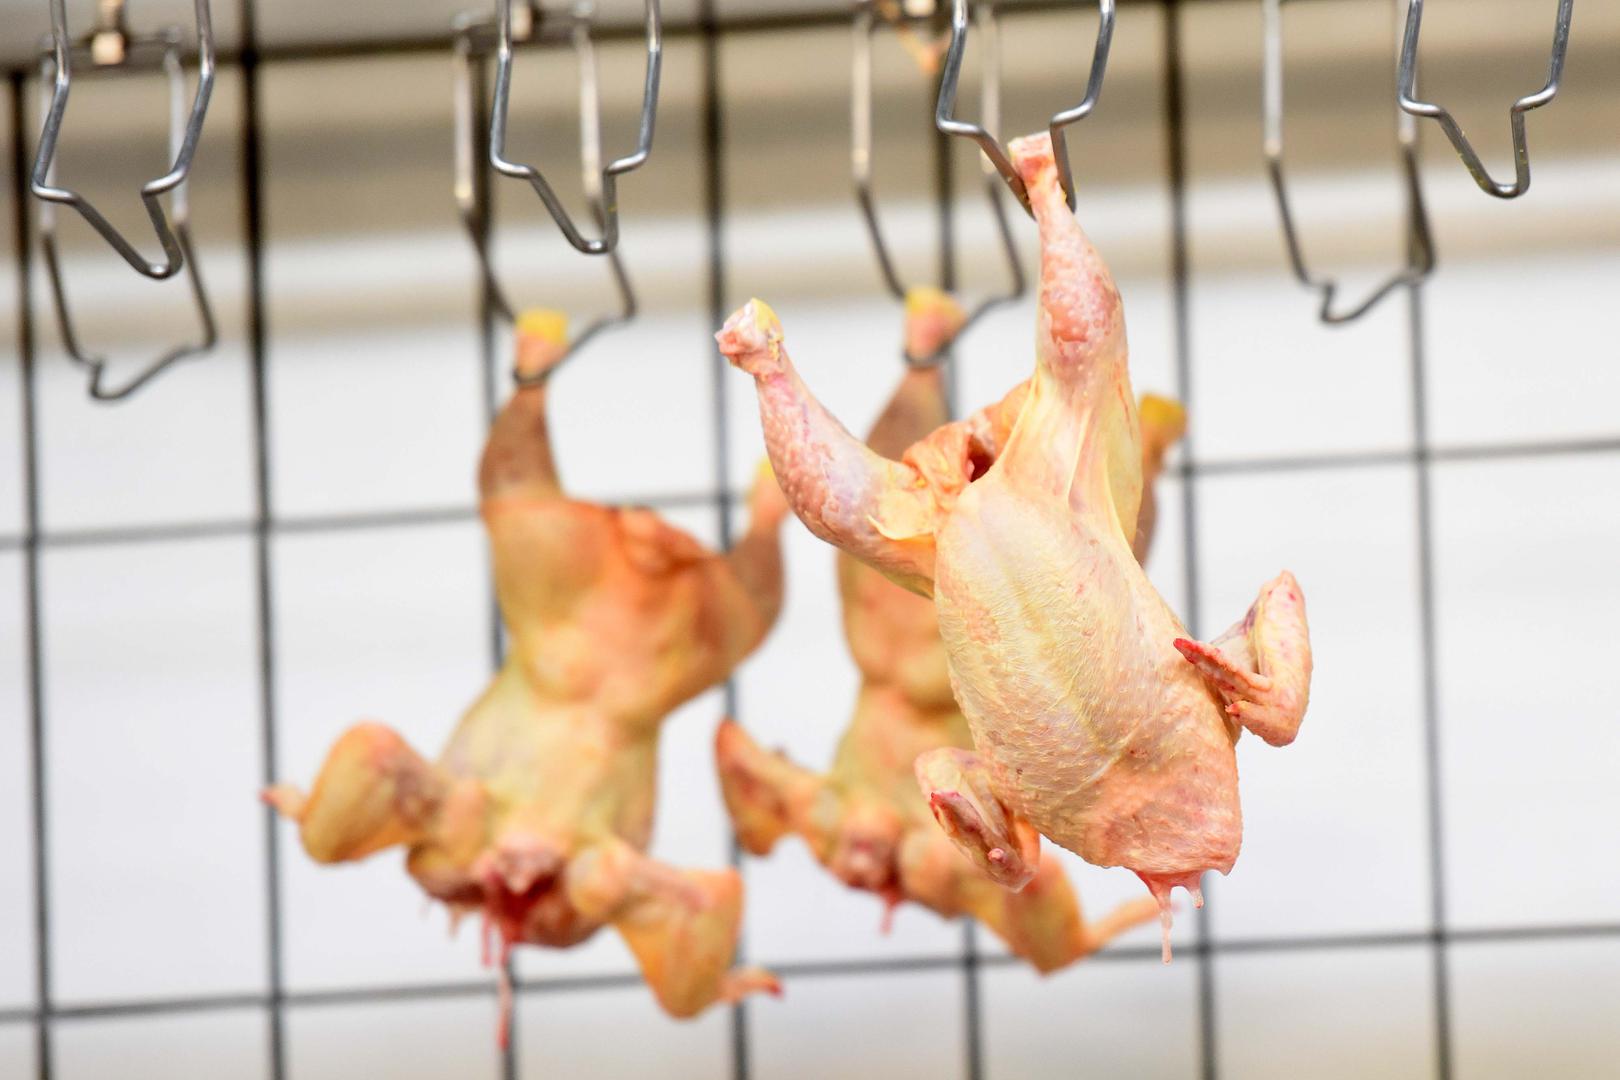 Industrijski uzgajana piletina i jaja također su na popisu namirnica koje valja izbjegavati.